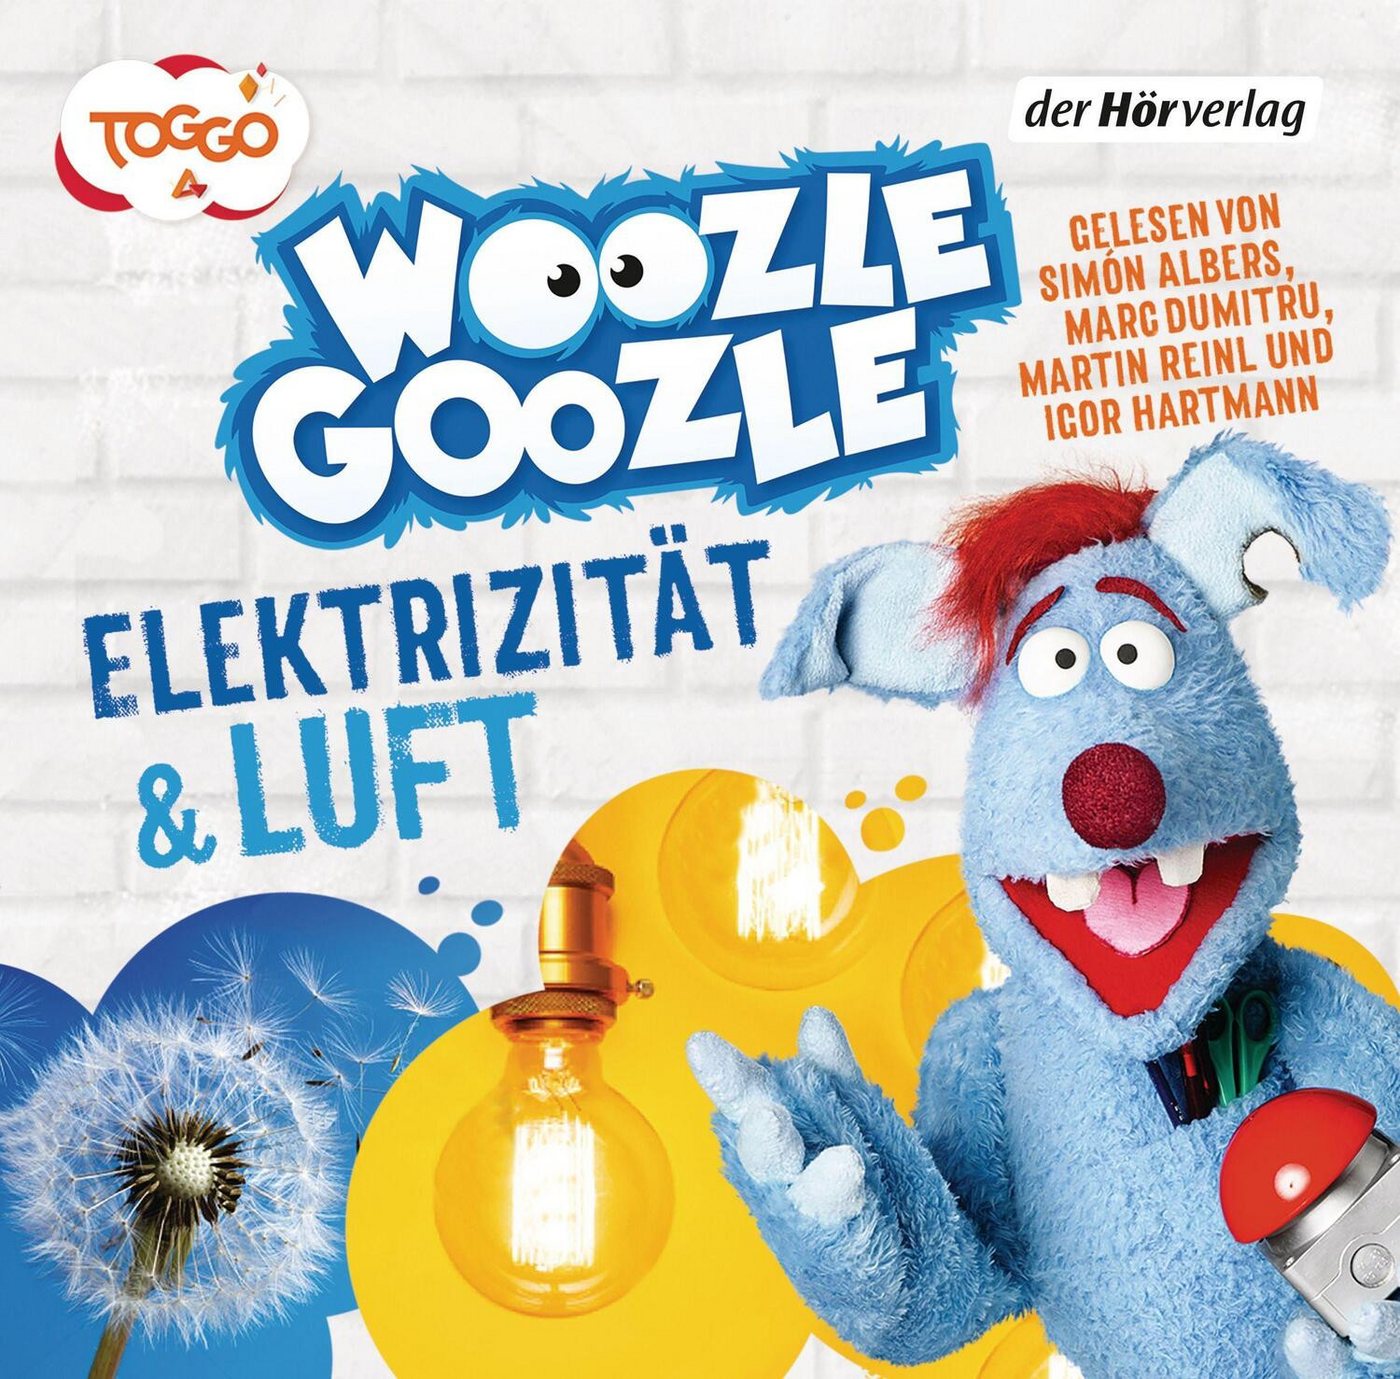 Der HörVerlag Hörspiel Woozle Goozle 02. Luft & Elektrizität von Der HörVerlag